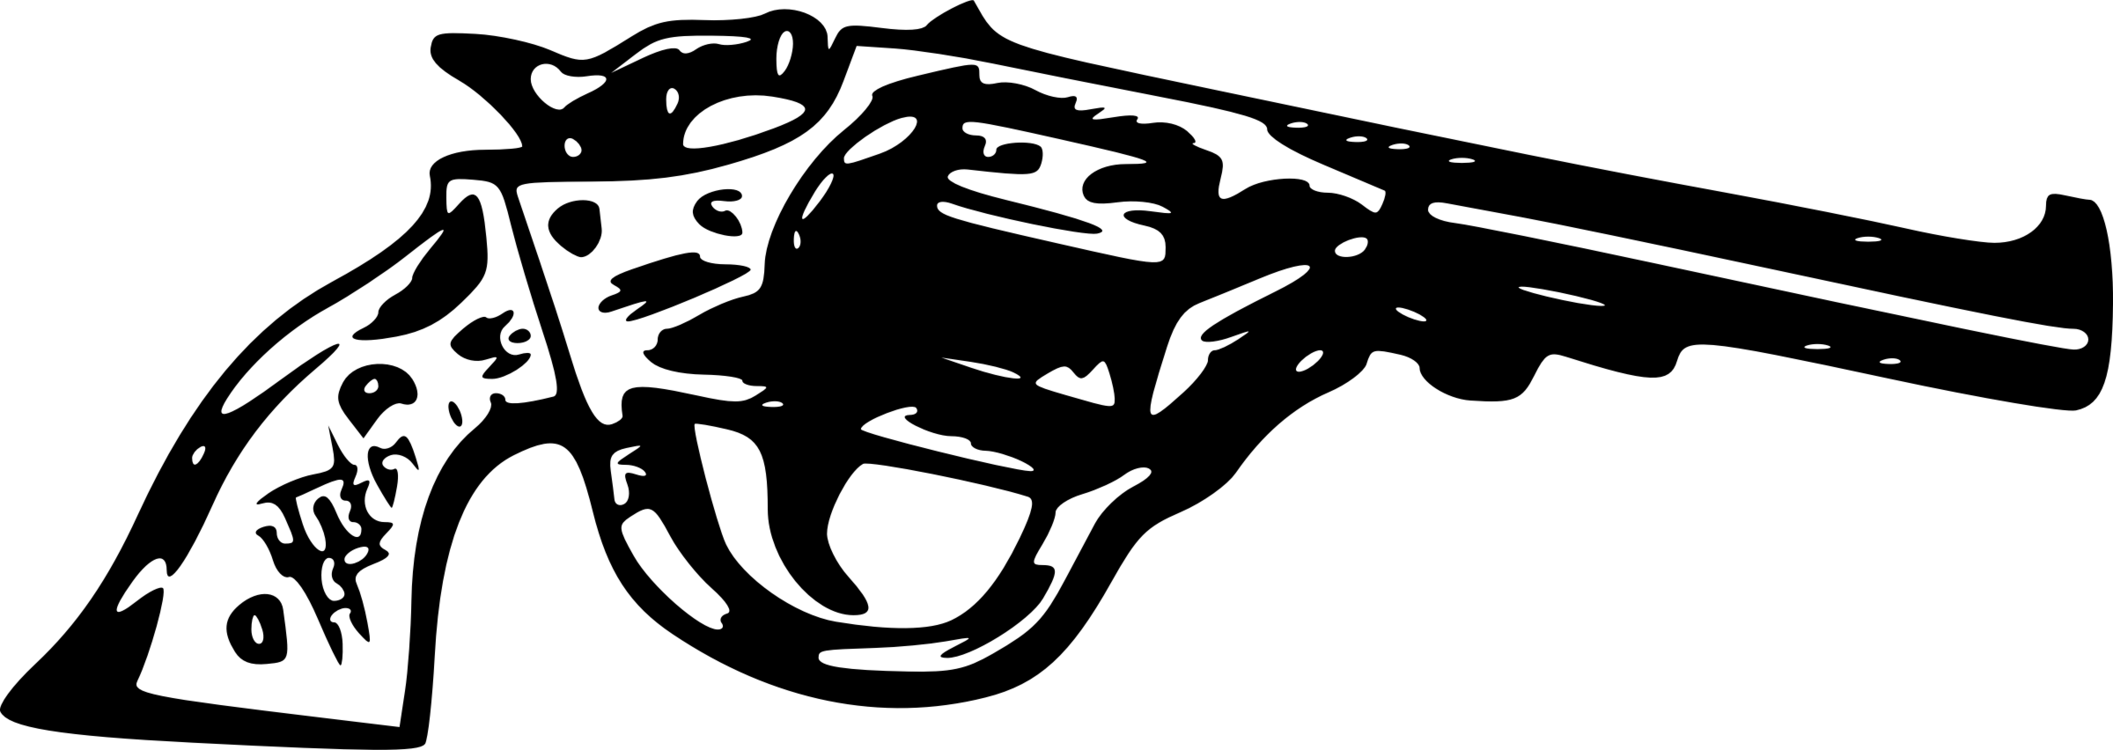 Firearm Logo - Violence Weapon Violent crime Logo Pistol free commercial clipart ...